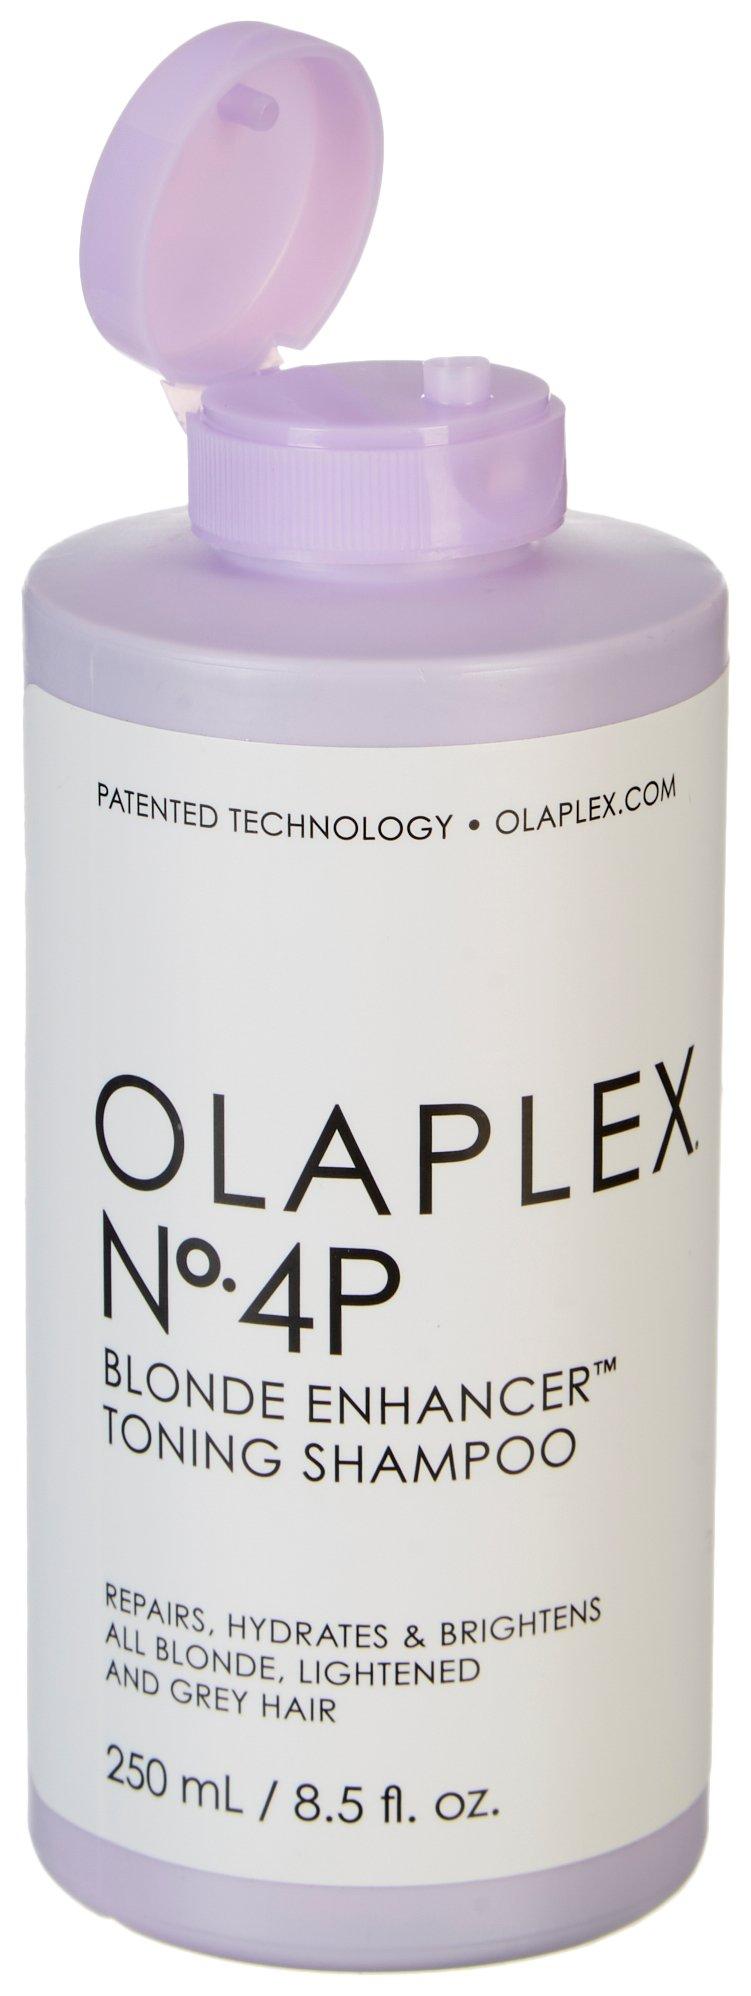 Olaplex No. 4P Blonde Enhancer Toning Shampoo 8.5 fl. oz.